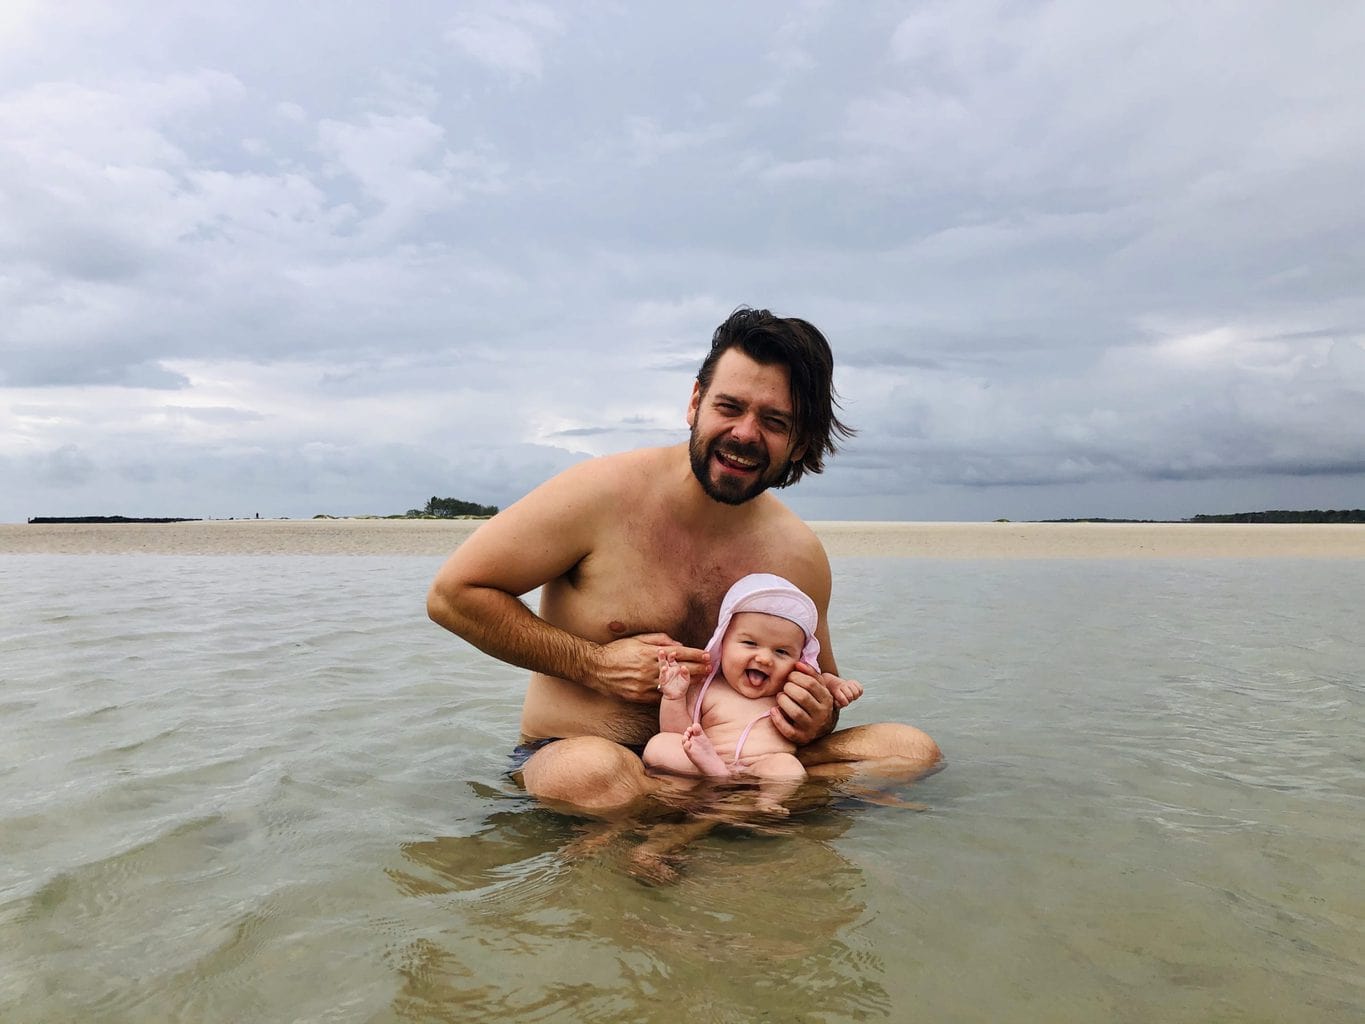 jordan and baby in ocean